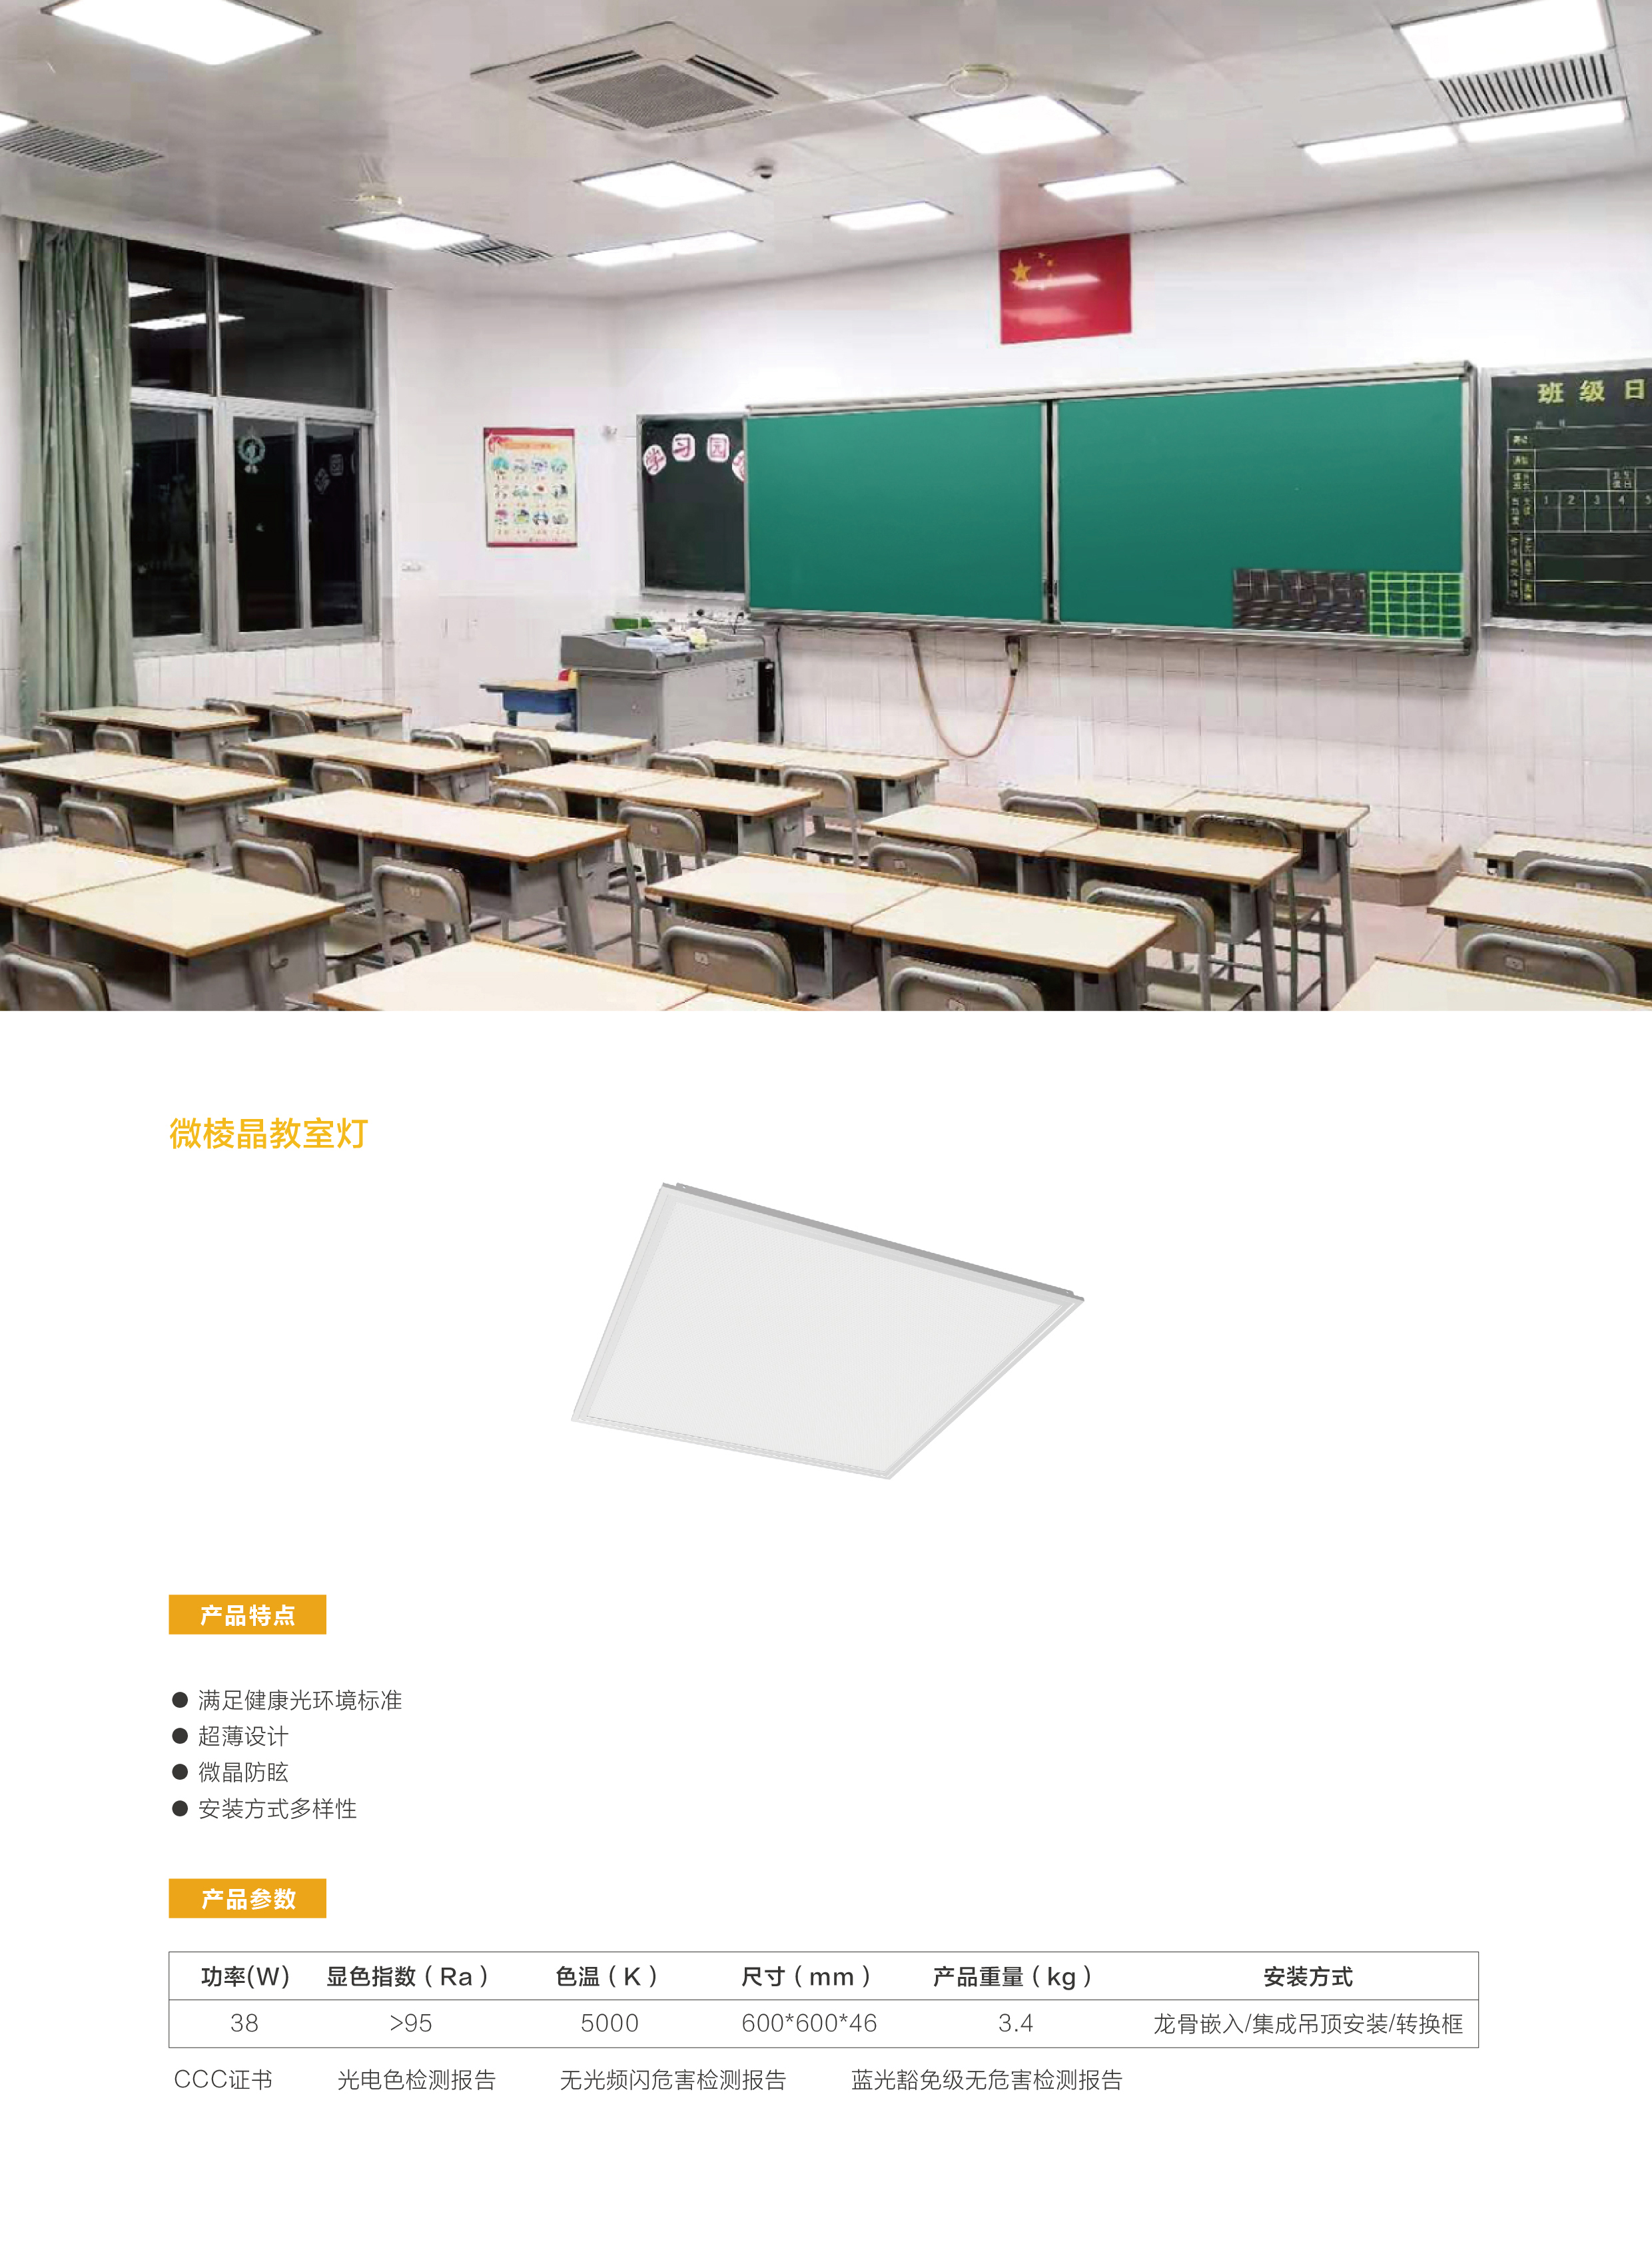 微棱晶教室灯.jpg